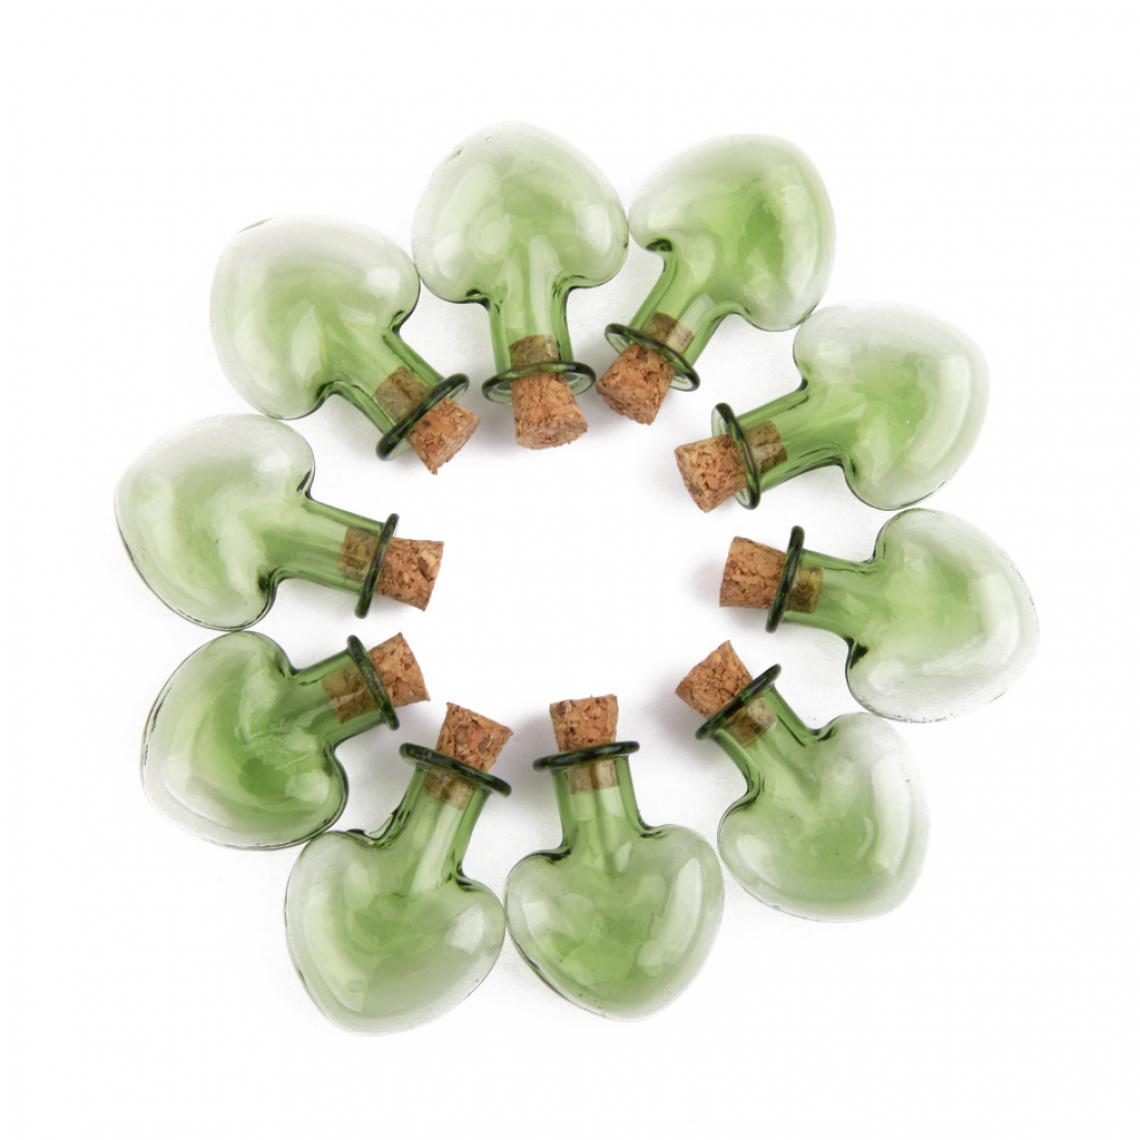 marque generique - 10 Pcs Mini Bouteille En Verre Coeur Pots Flacons Souhaitant Message Bouteilles De Liège Vert - Perles